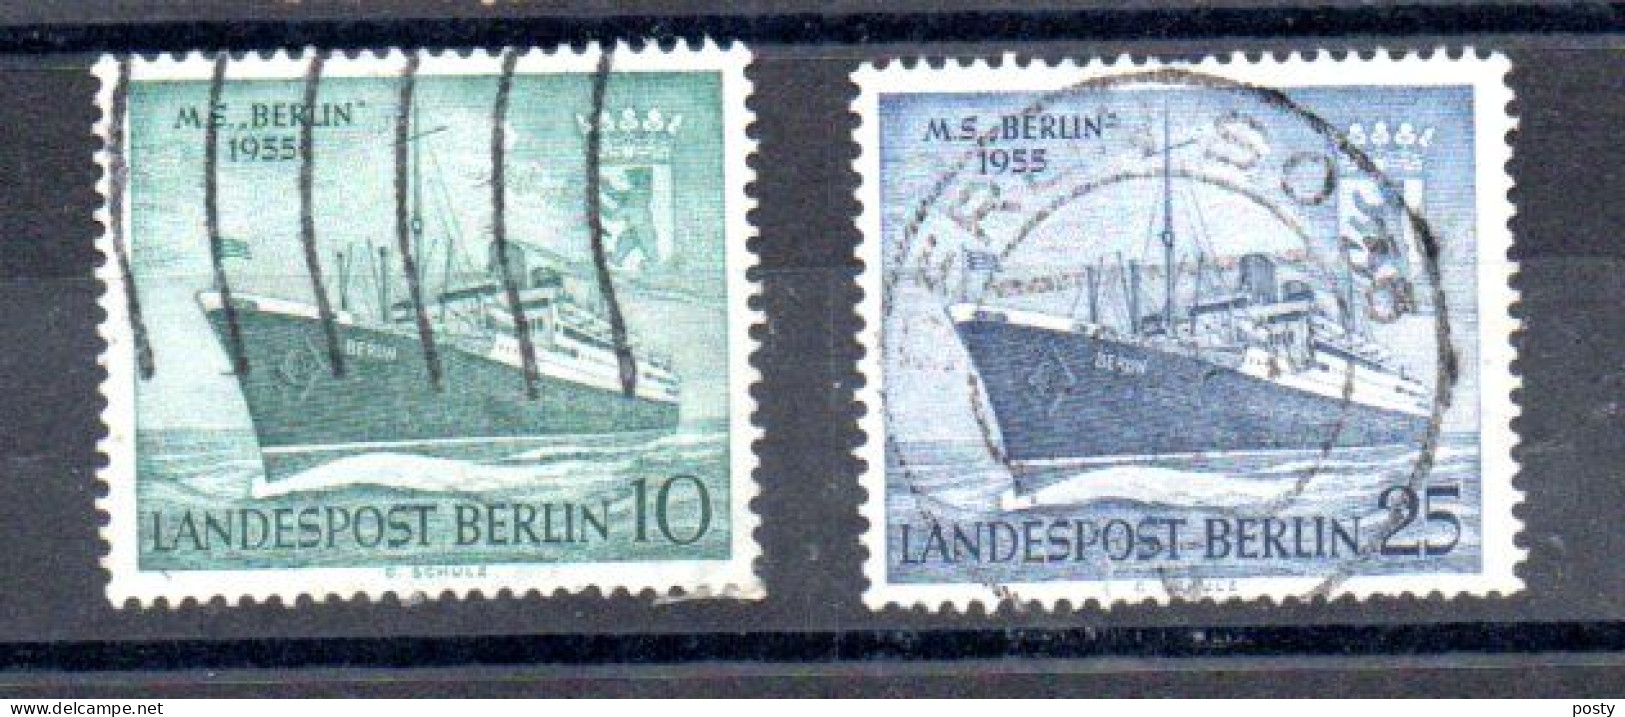 ALLEMAGNE - GERMANY - BERLIN - 1955 - M.S BERLIN - PAQUEBOT - SCHIFF - OCEANLINER - 10 + 25 - Oblitéré - Used - - Usados